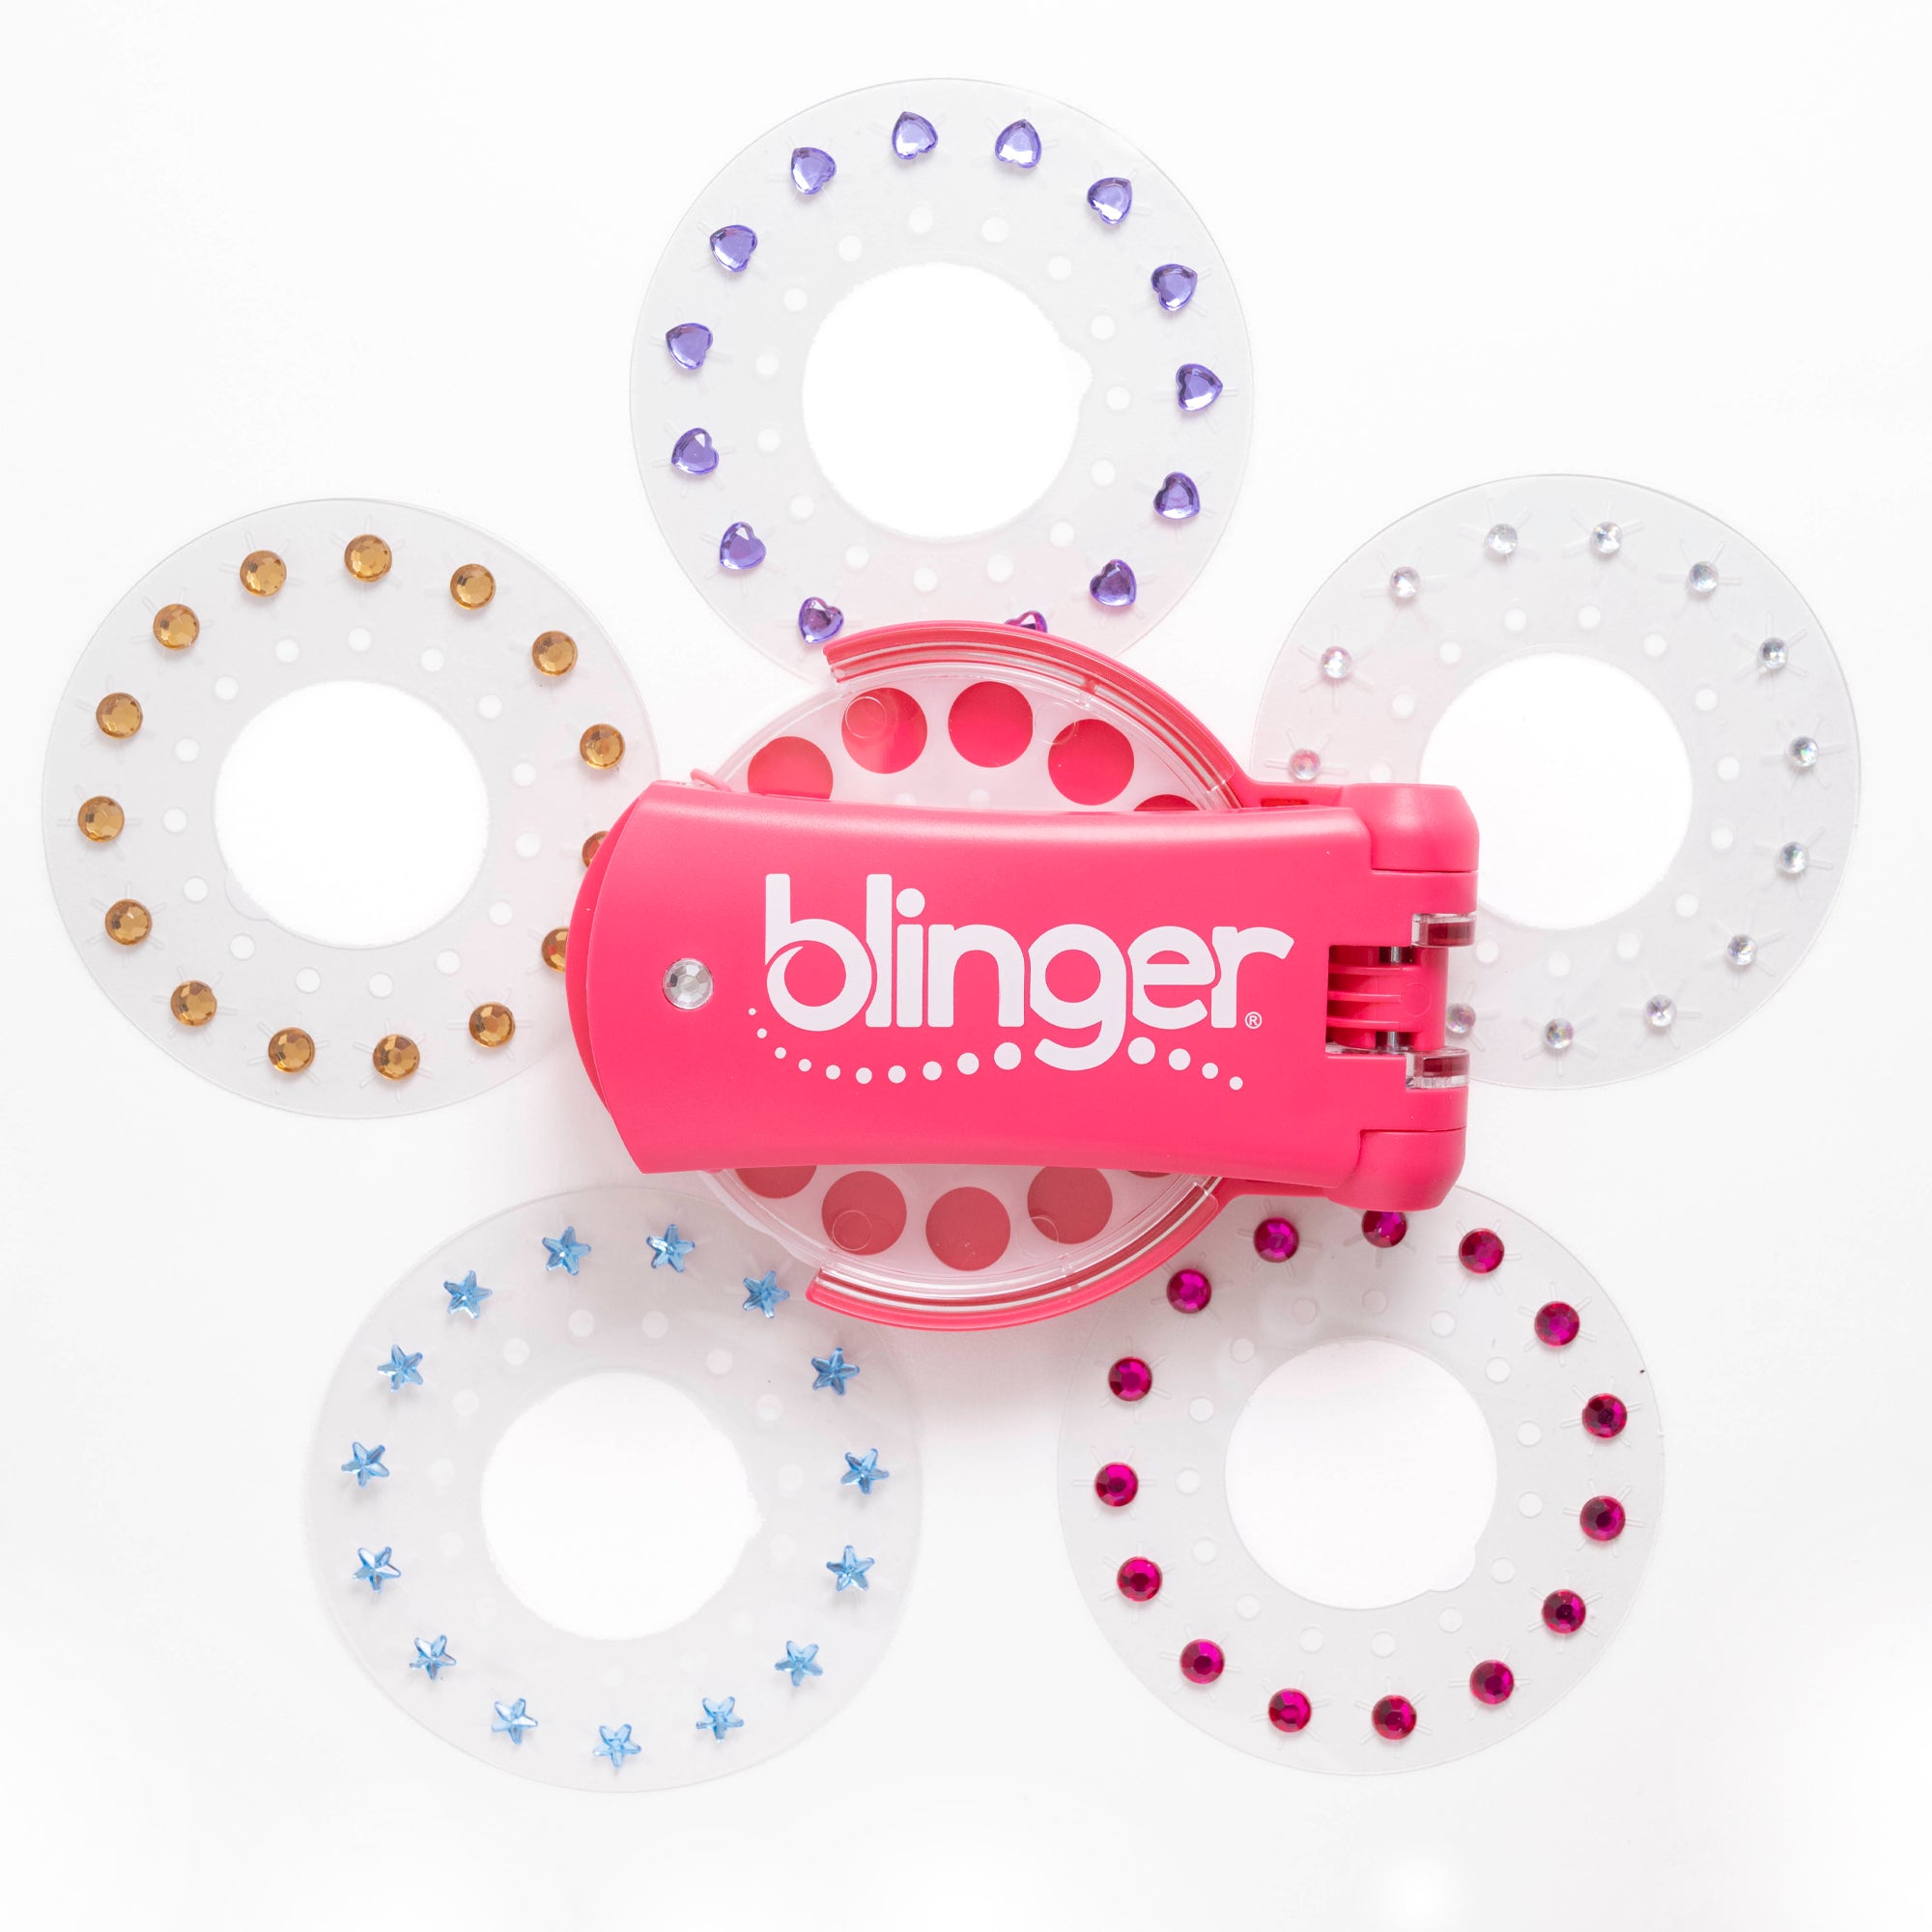 Blinger Kids Hair Styling Tool Starter Kit w/ 150 Rhinestones